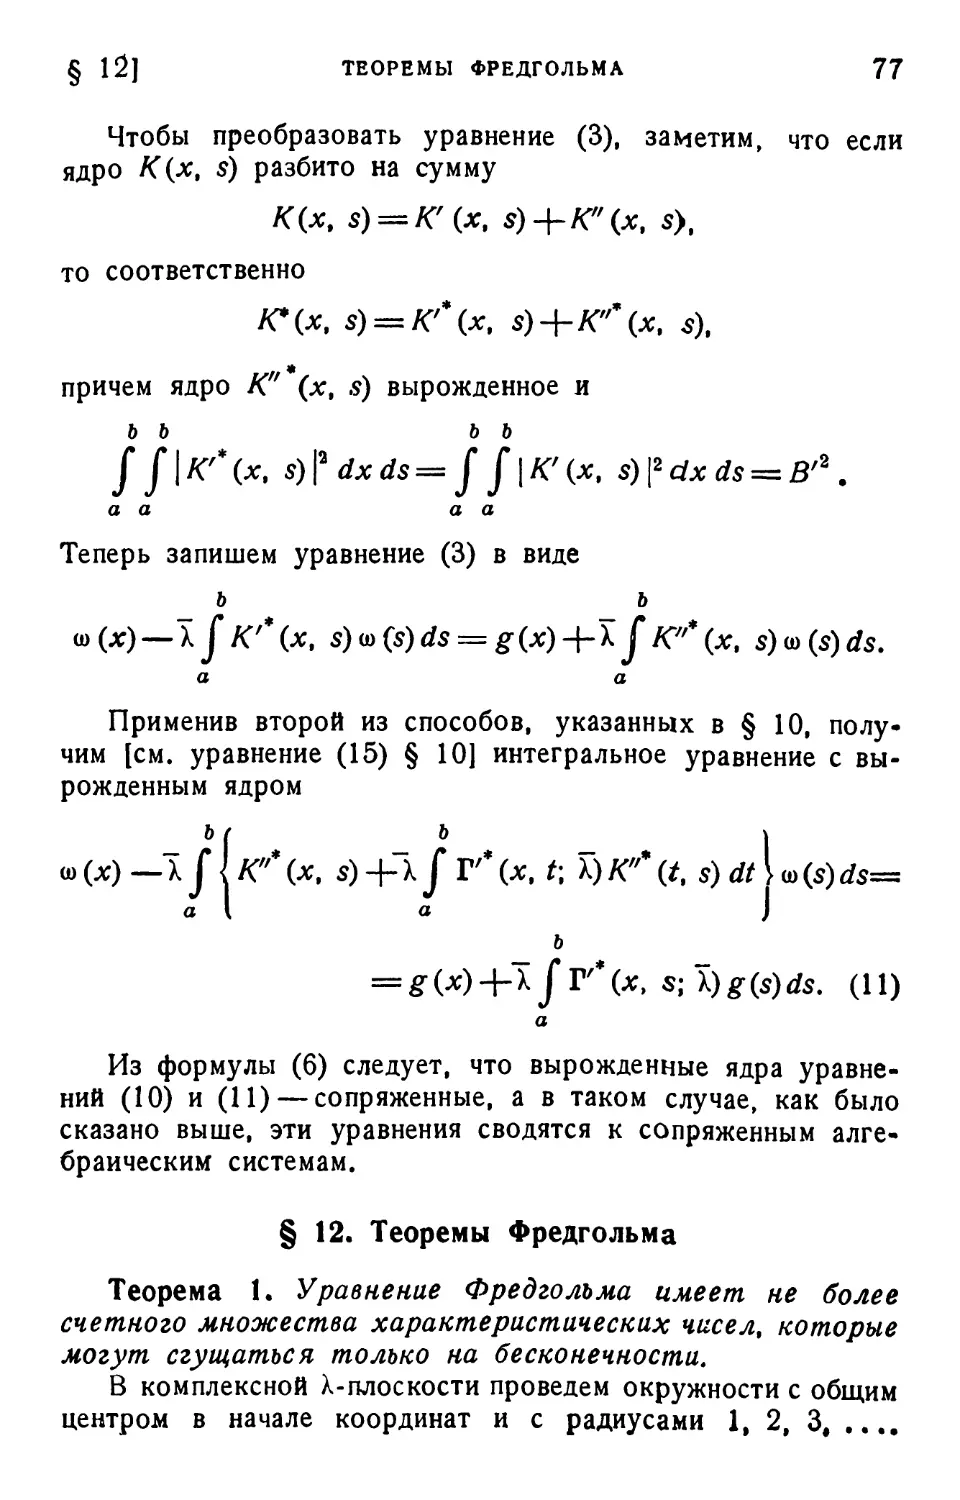 § 12. Теоремы Фредгольма